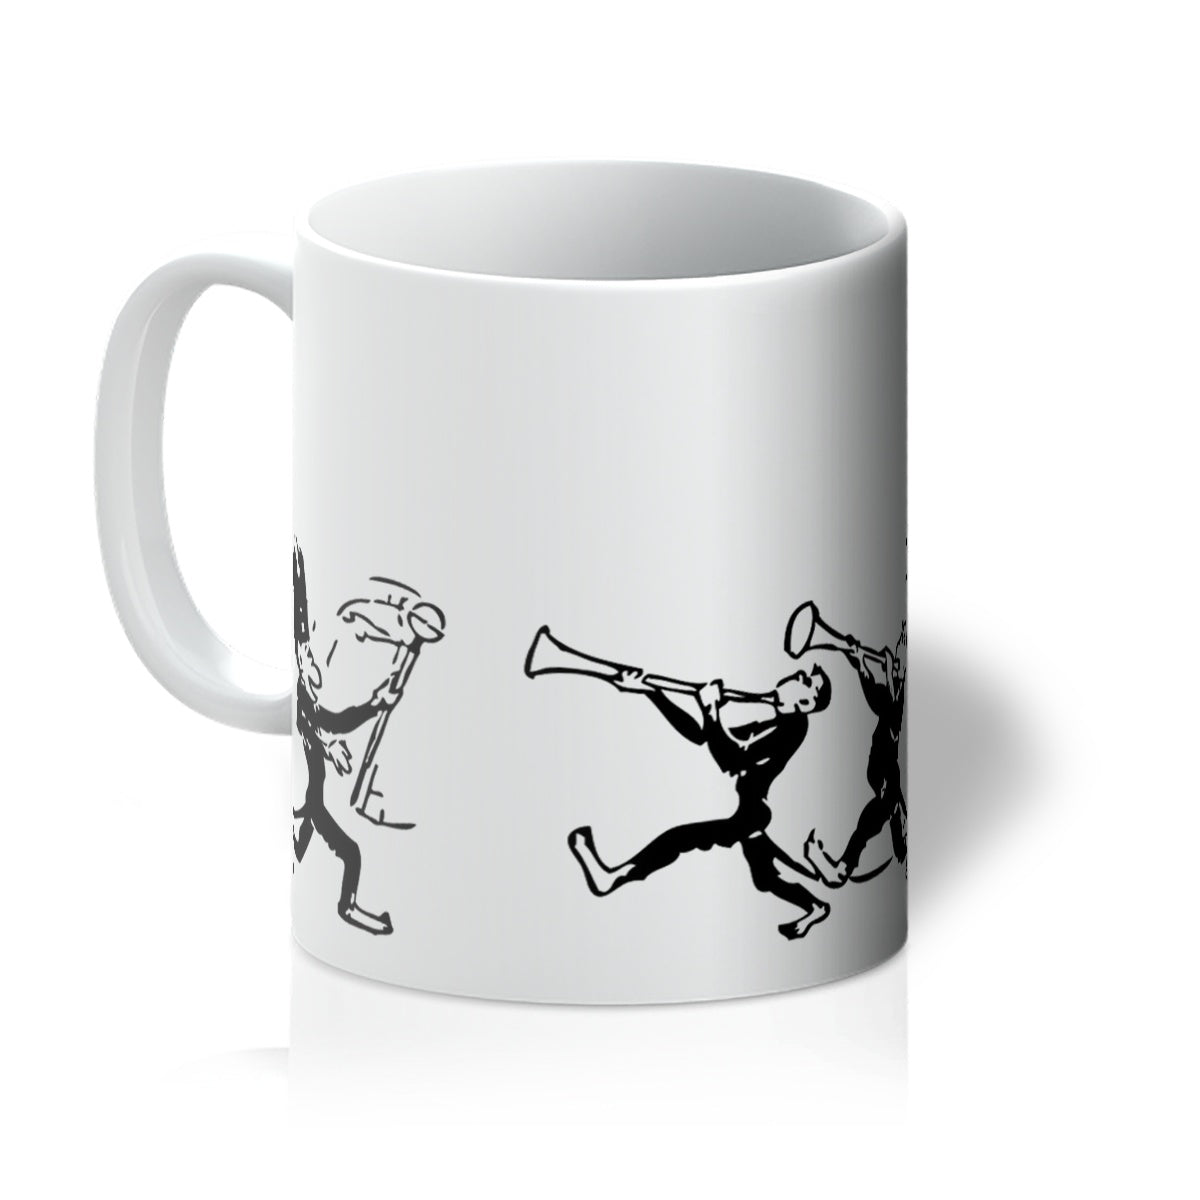 Monkey Band Mug